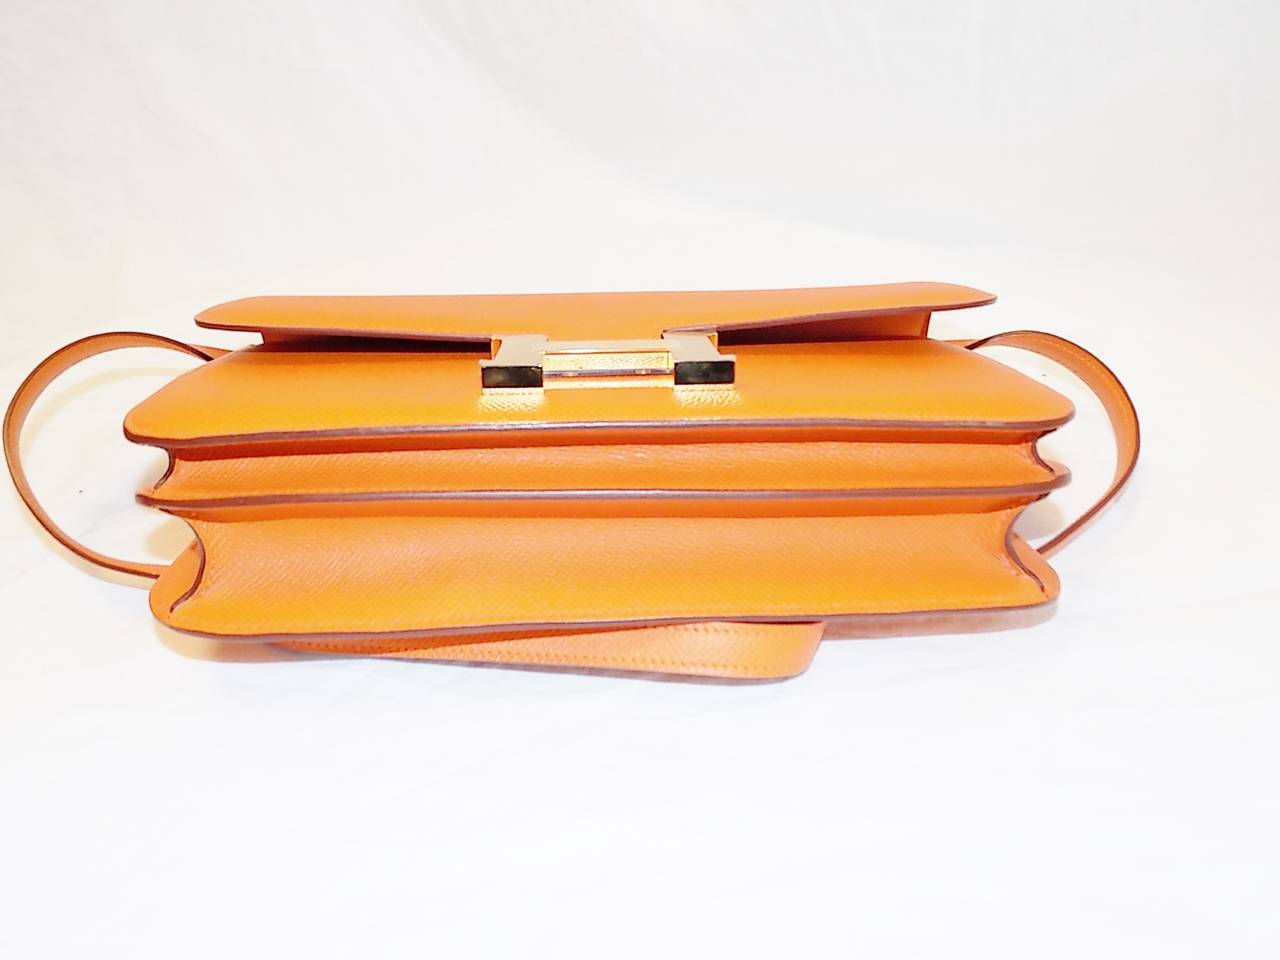 Hermes Constance Elan Swift Leather Bag in orange color. NEW! at 1stDibs